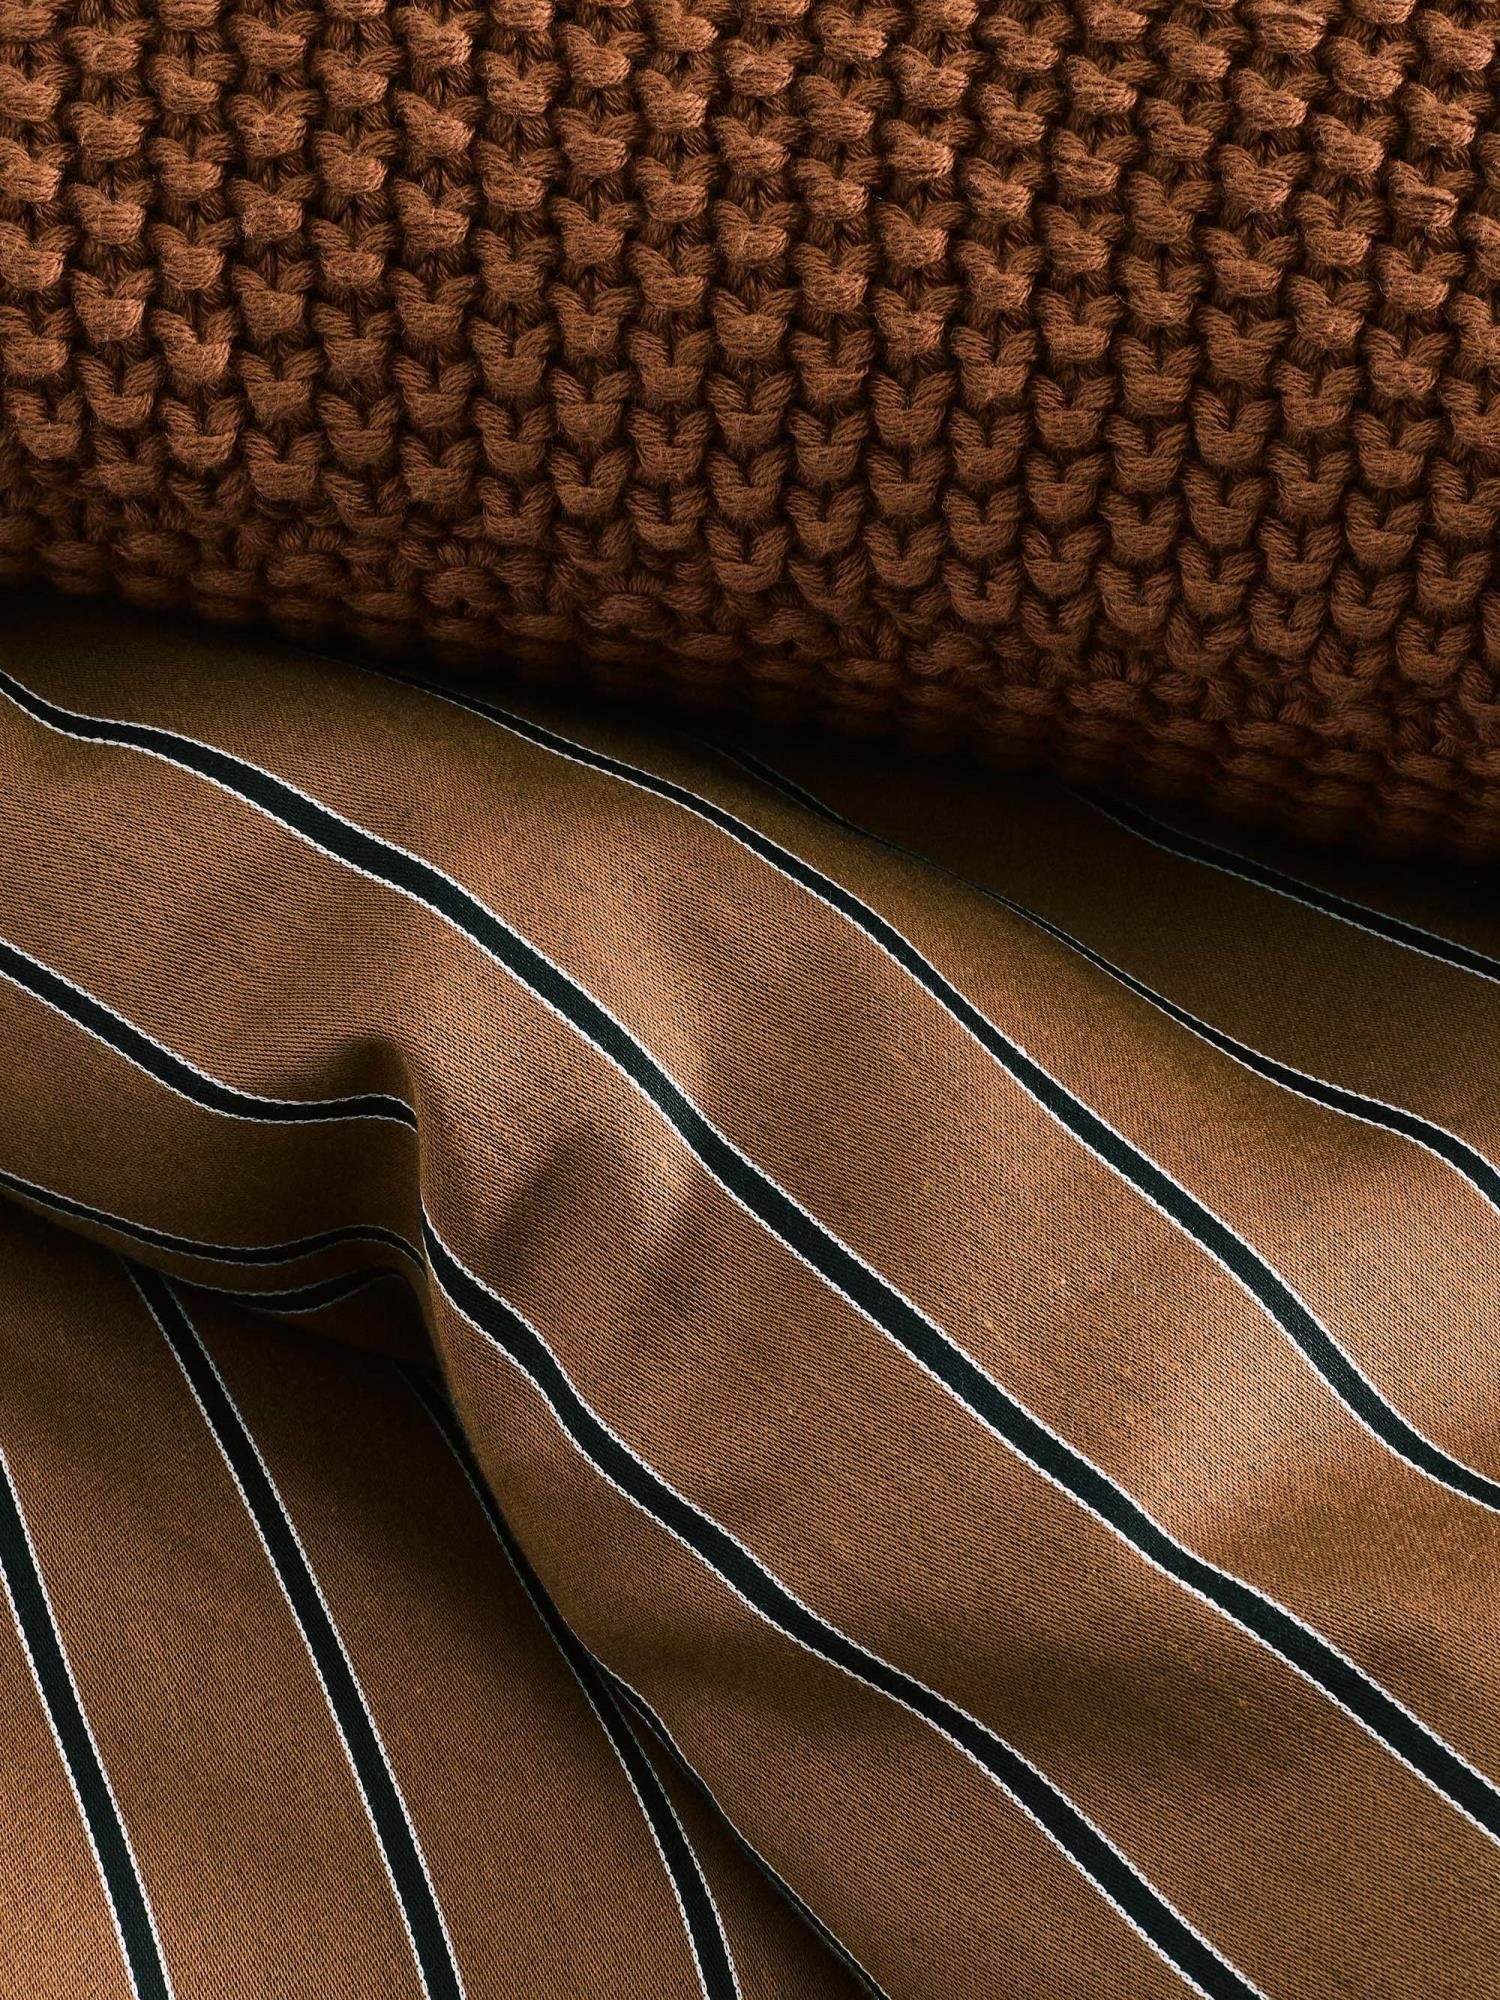 aus Marc Home Toffee Dekokissen knit, Baumwolle Nordic nachhaltiger O'Polo gestrickter Brown